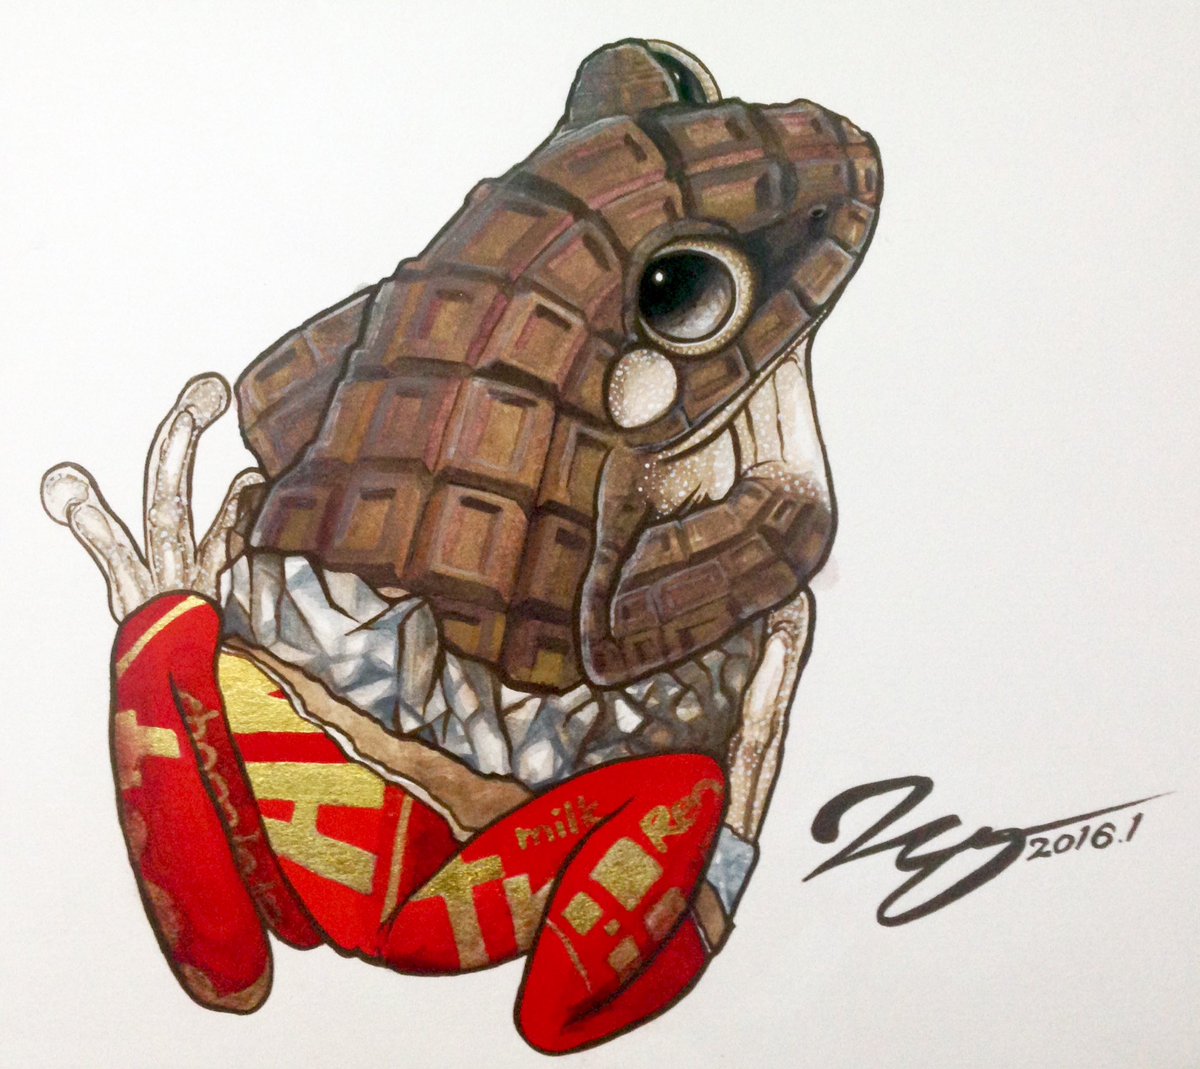 「「 #カエルメイト 」より
●チョコガエル

体表の凹凸と体色がチョコを連想させ」|ヒキタ レオ▶︎引田 玲雄のイラスト